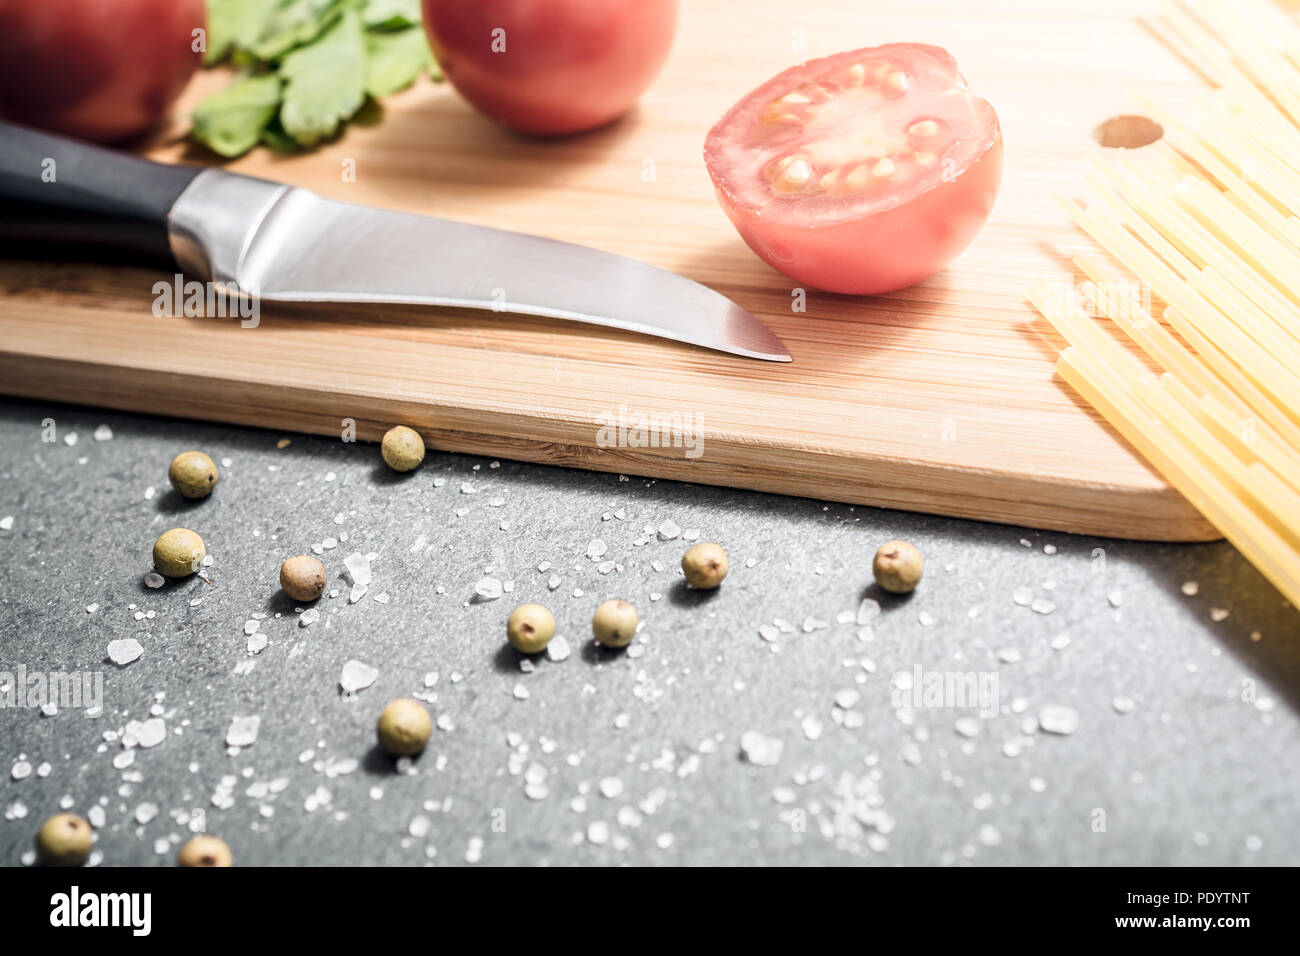 Sur un couteau à découper avec une cuisine des ingrédients comme les tomates, le sel et le poivre - préparer le dîner Concept Banque D'Images